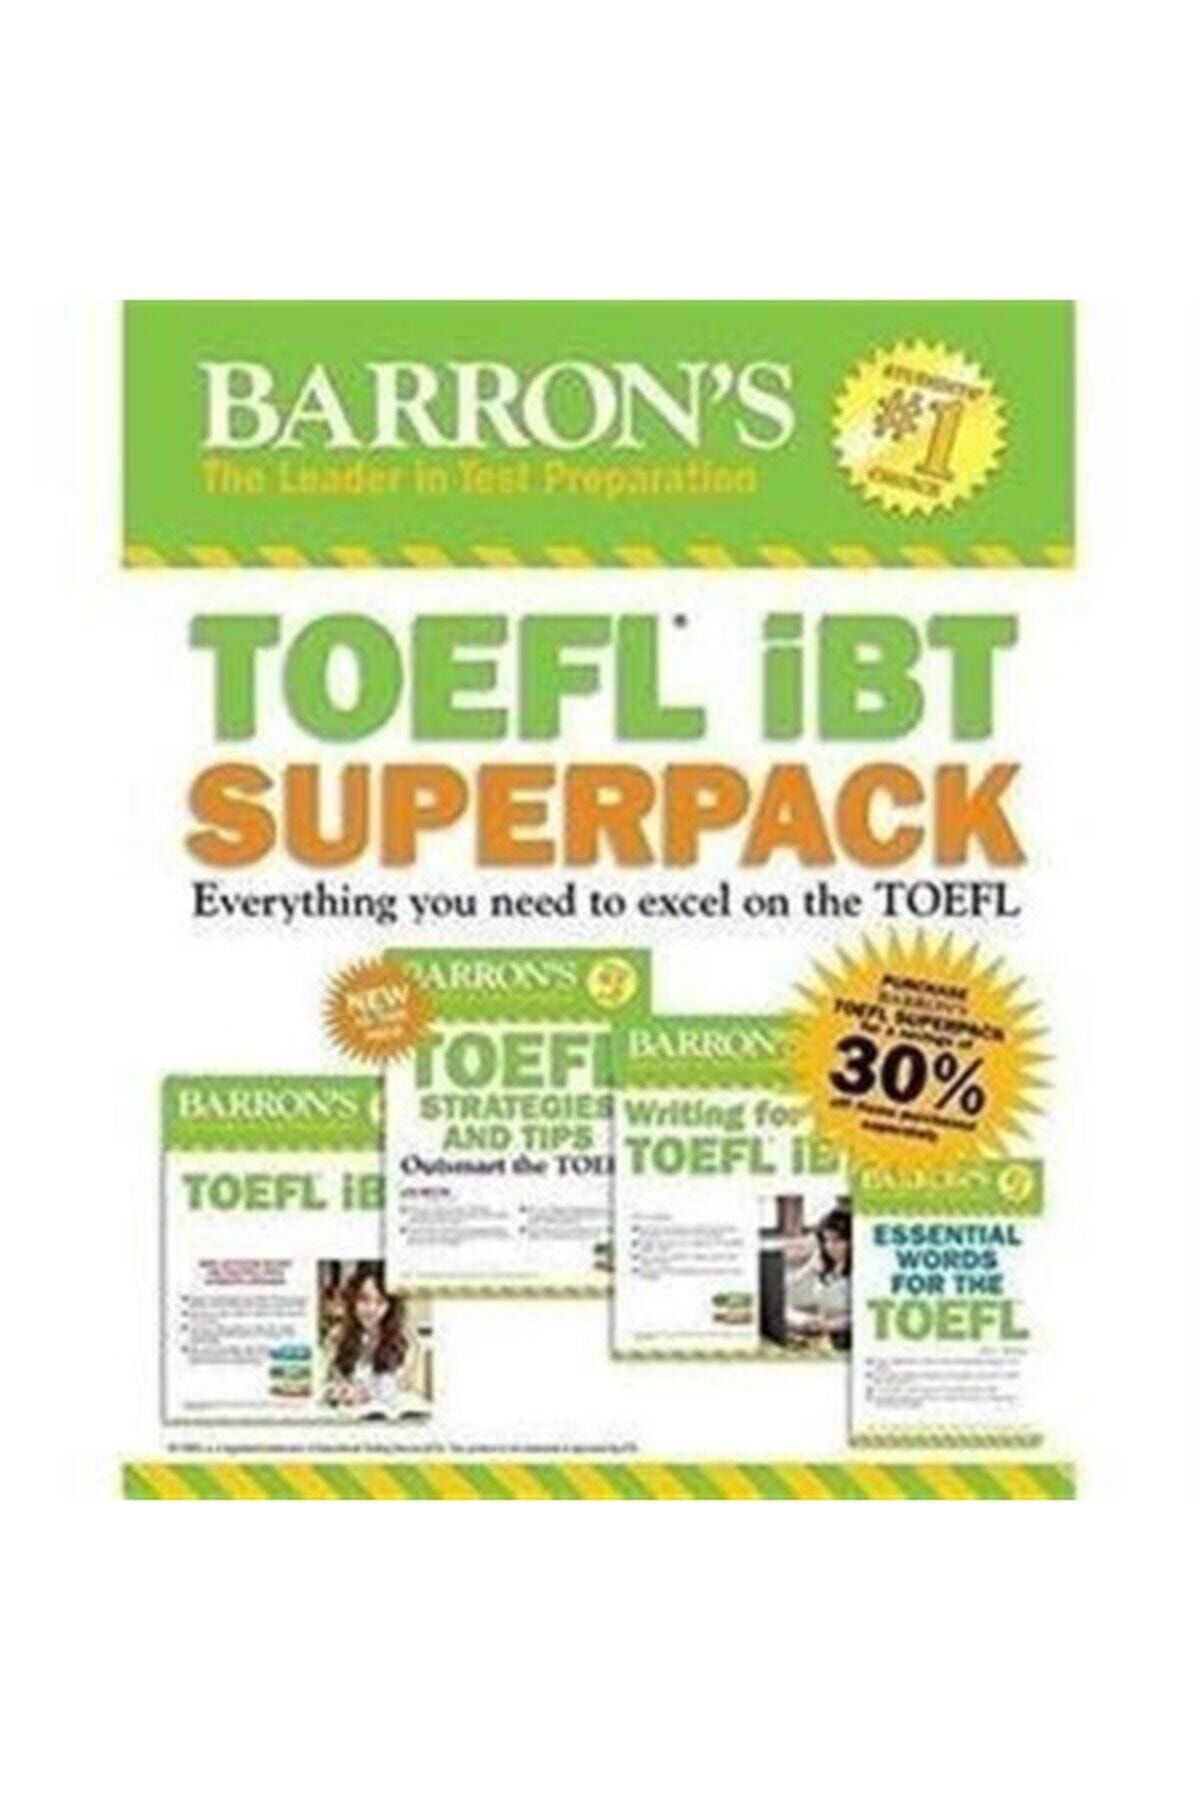 Barron's　3e　Toefl　Trendyol　Ibt　Fiyatı,　Superpack　(kutulu　Set)　Yorumları　Barrons　Yayınları